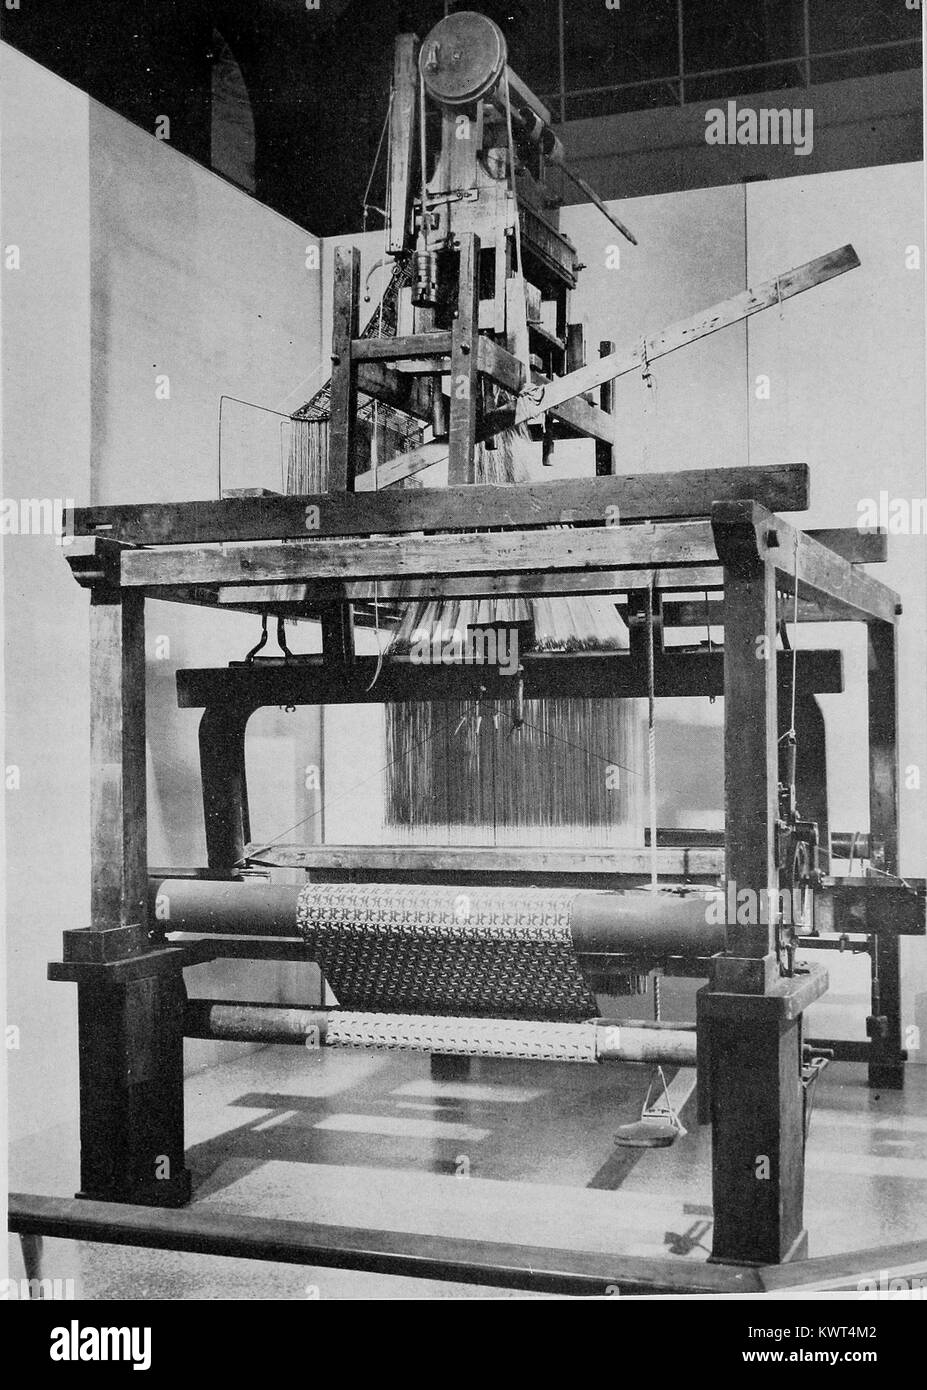 Foto eines antiken französischen Webstuhl, der mit einem Jacquard Anlage nachgerüstet wurde, so dass der mechanisch zu weben, komplexen Gewebe designs Webstuhl, Frankreich, 1951. Mit freundlicher Genehmigung Internet Archive. Stockfoto